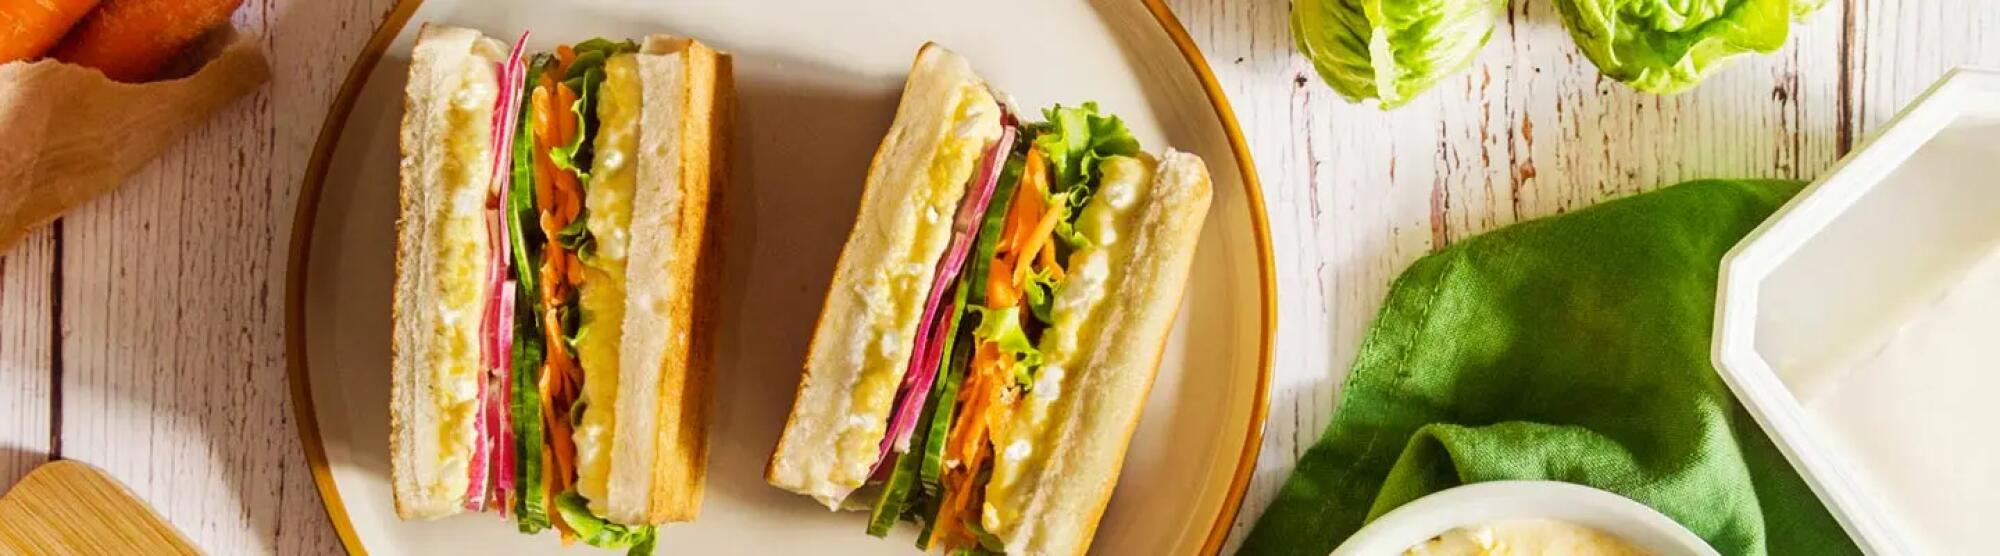 Recette : Sandwich pain de mie, crudités et fromage frais